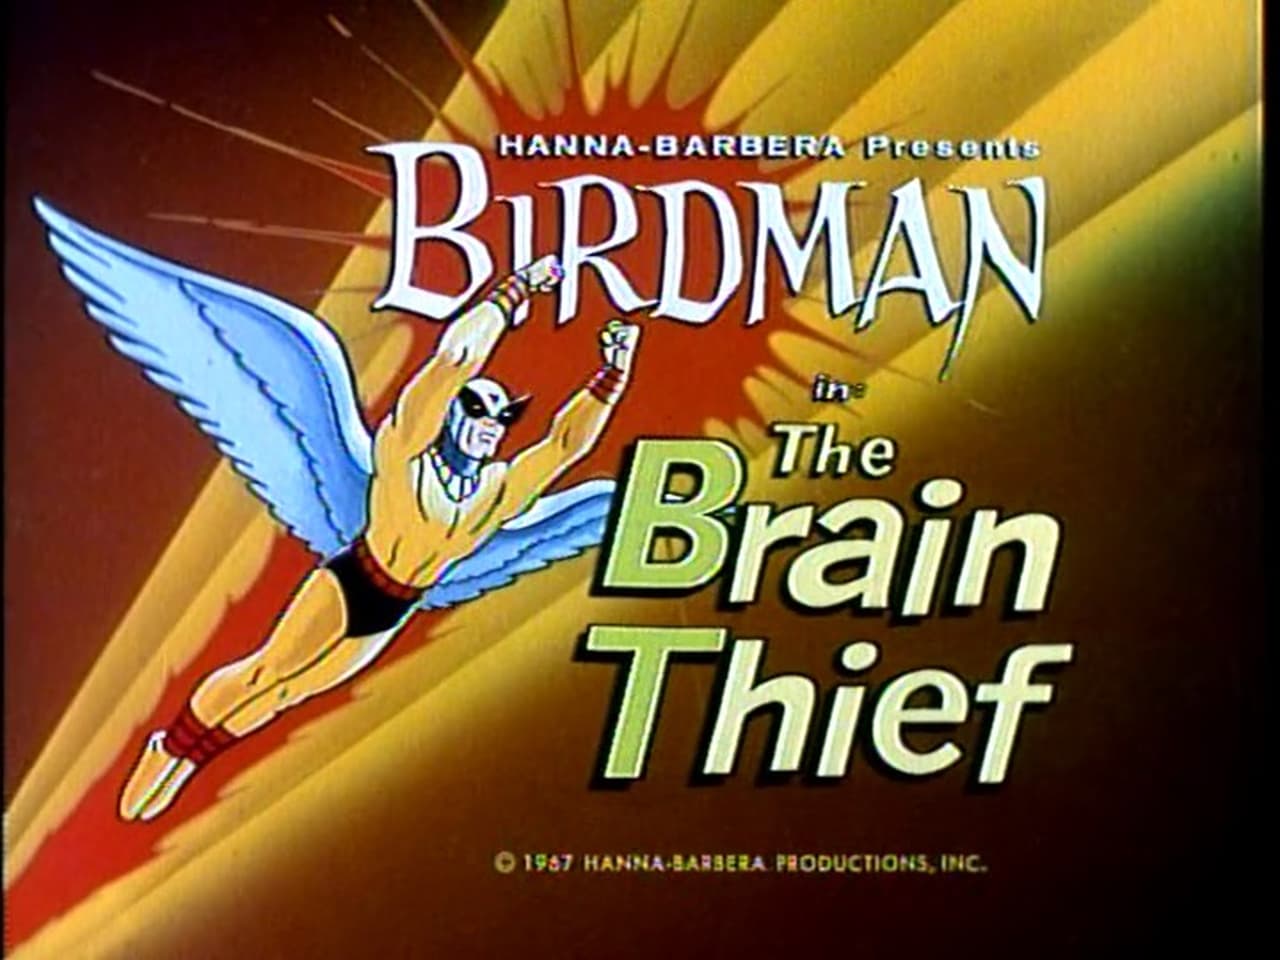 The Brain Thief